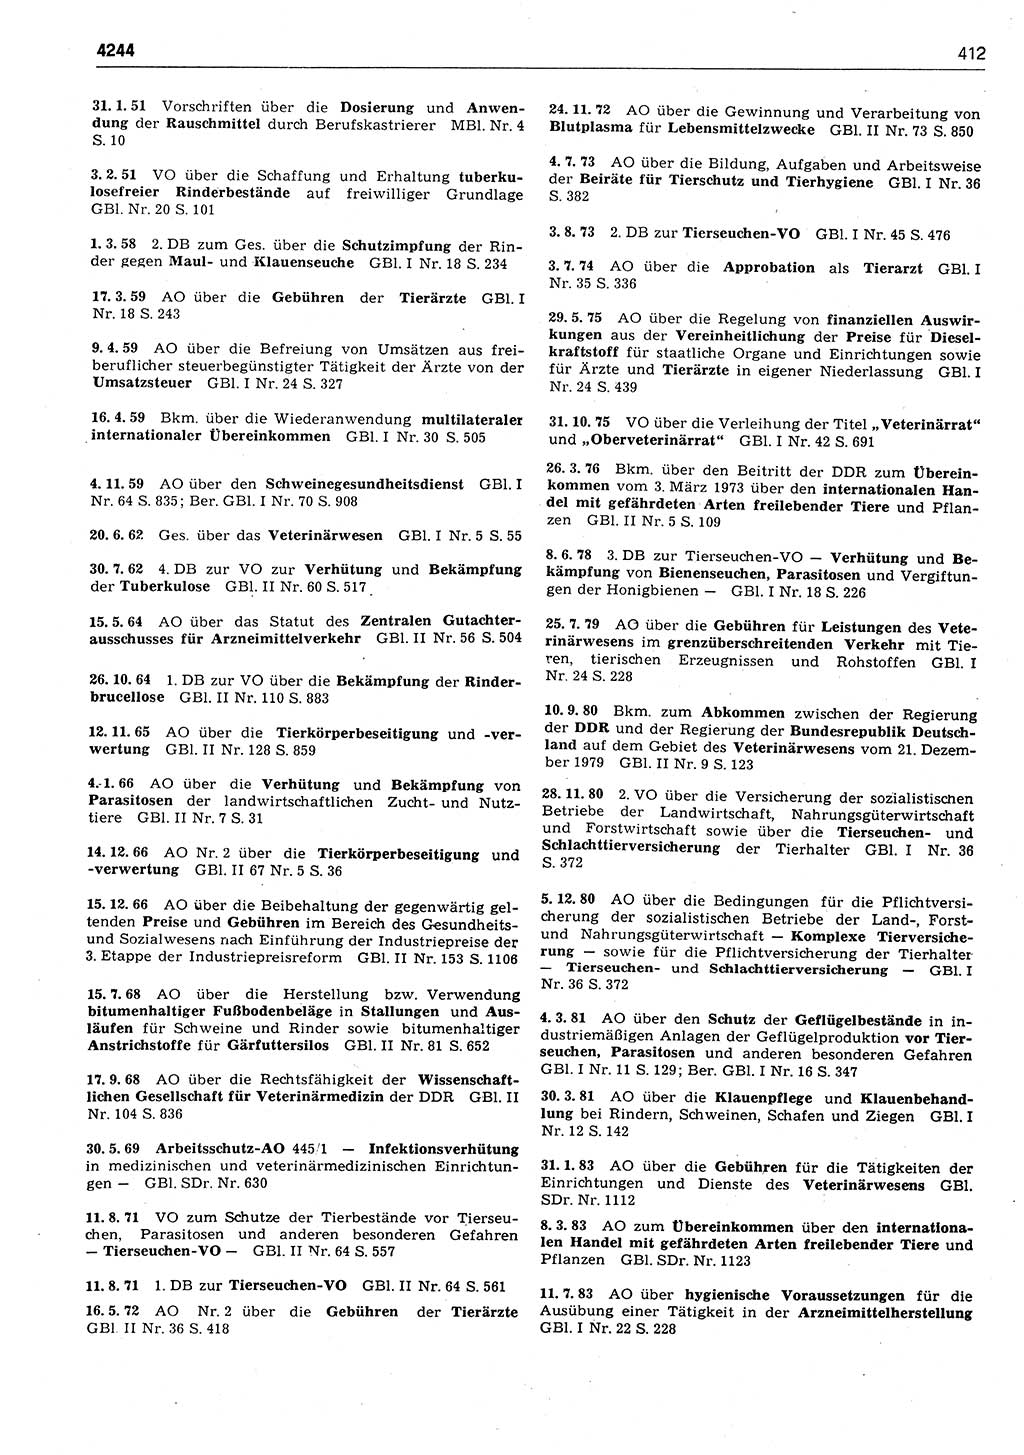 Das geltende Recht der Deutschen Demokratischen Republik (DDR) 1949-1988, Seite 412 (Gelt. R. DDR 1949-1988, S. 412)